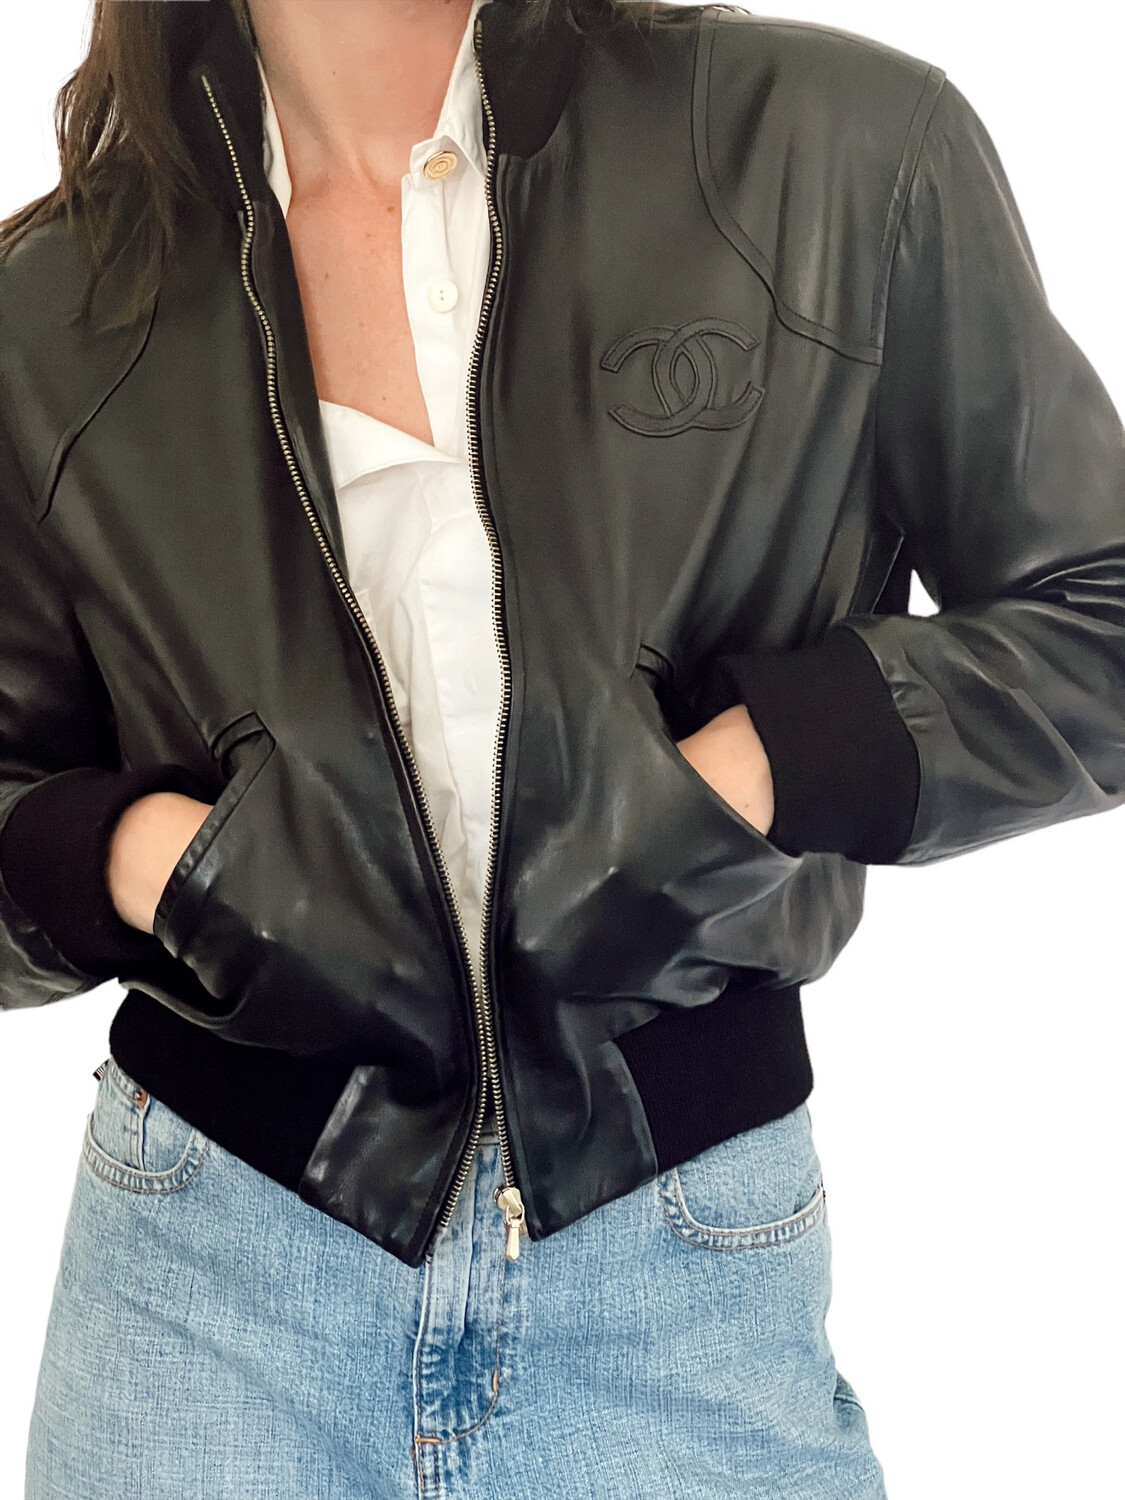 Amazoncom Coatology Womens Jewel Neck Chanel Inspired Jacket Black  Magenta XLarge  Clothing Shoes  Jewelry